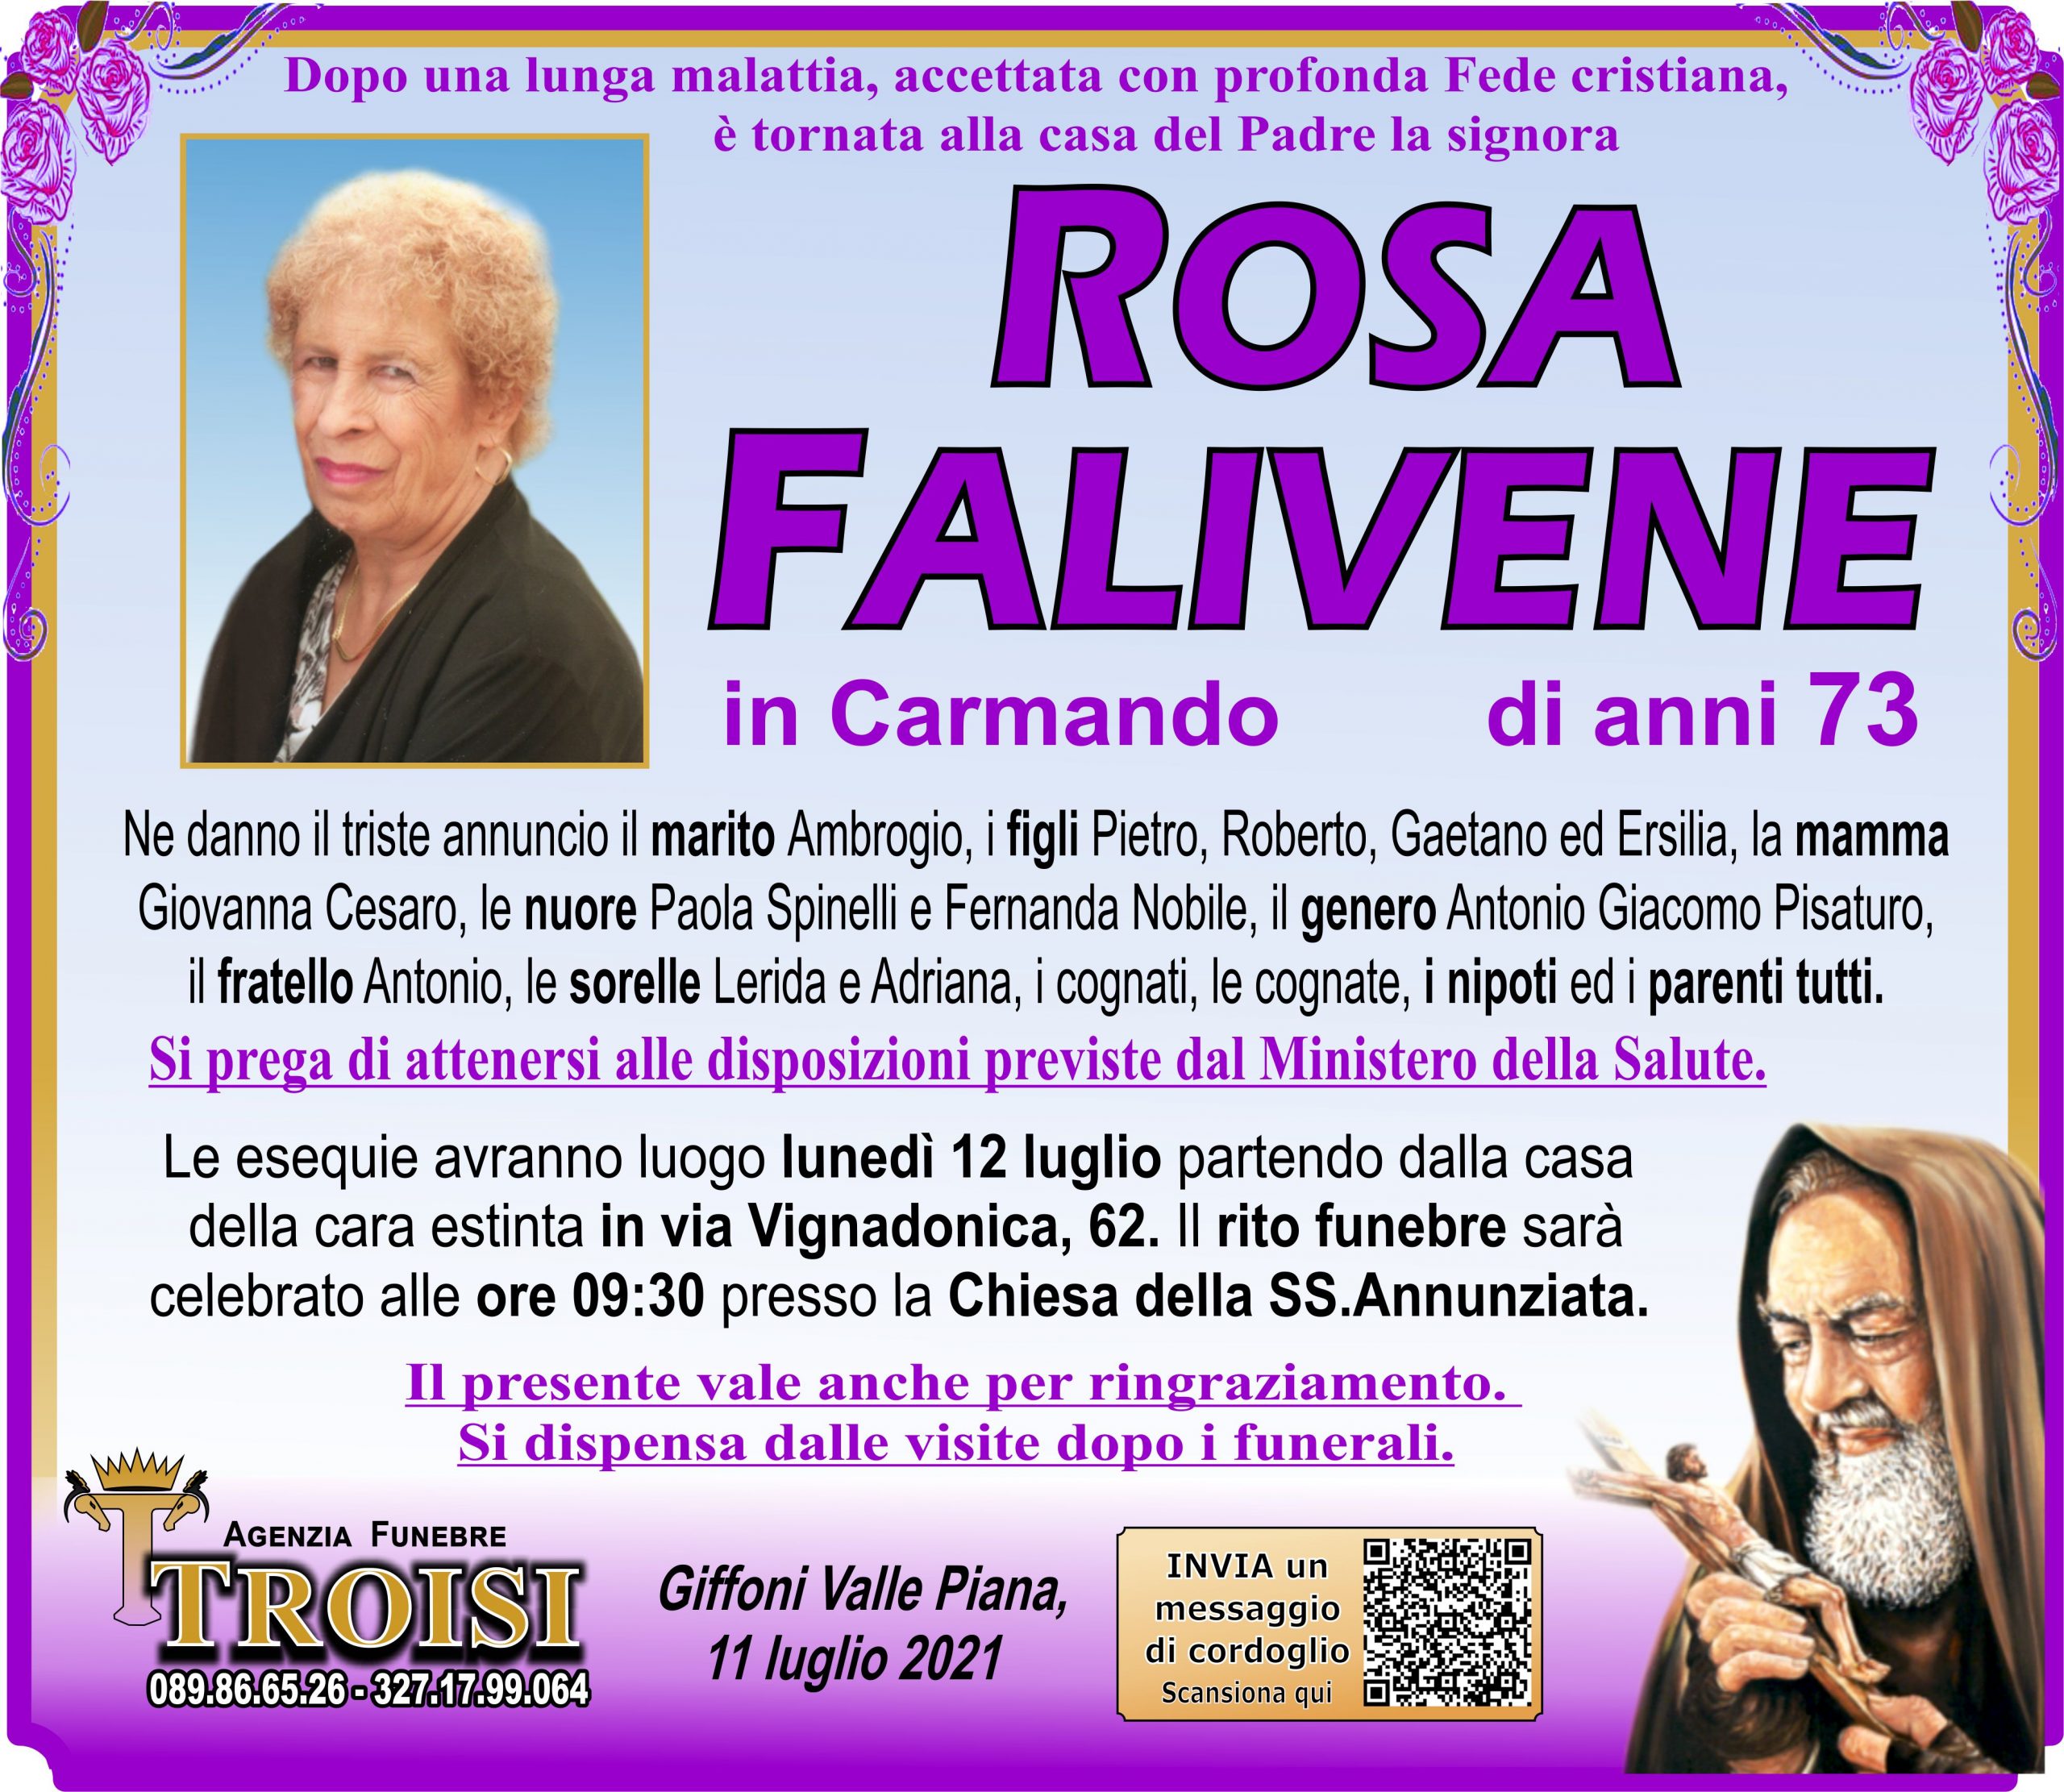 ROSA FALIVENE